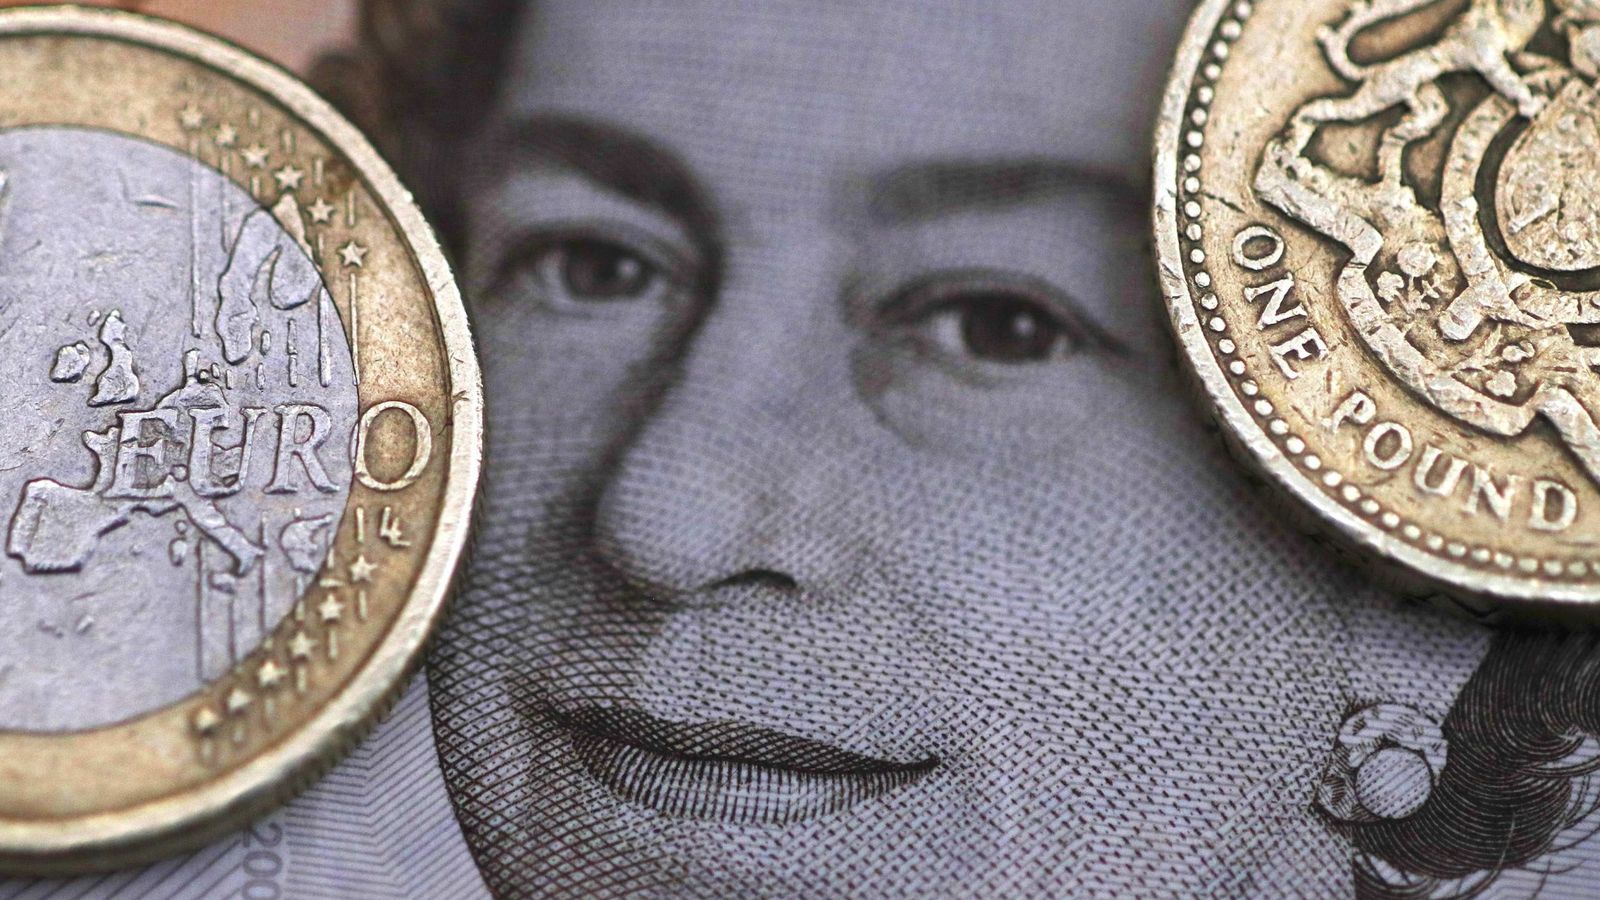 Foto: Monedas de euro y libra sobre el retrato de la Reina de Inglaterra./REUTERS